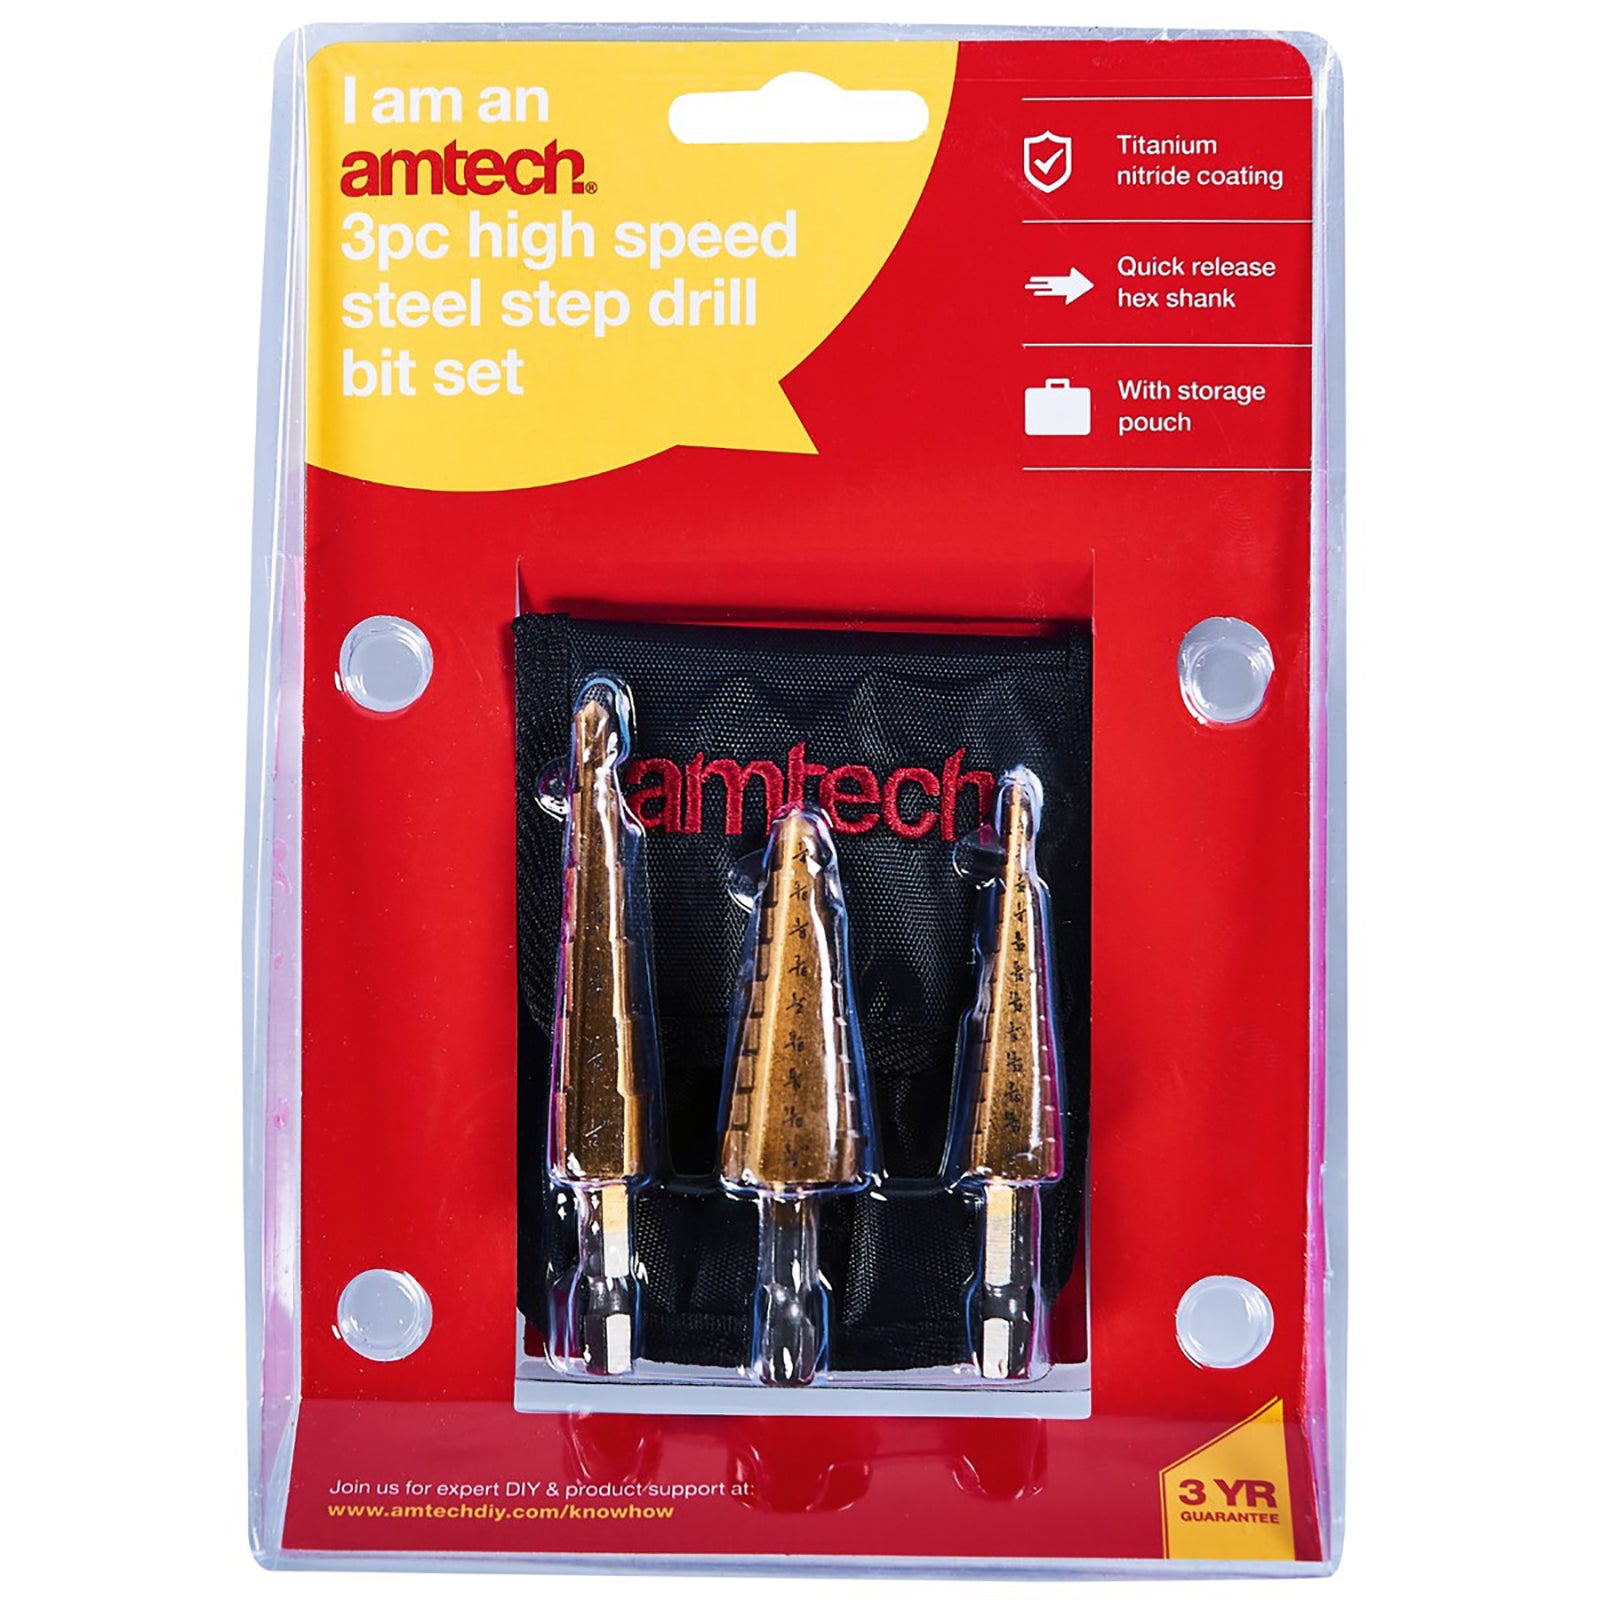 Amtech 3 Piece Imperial HSS Step Drill Bit Set